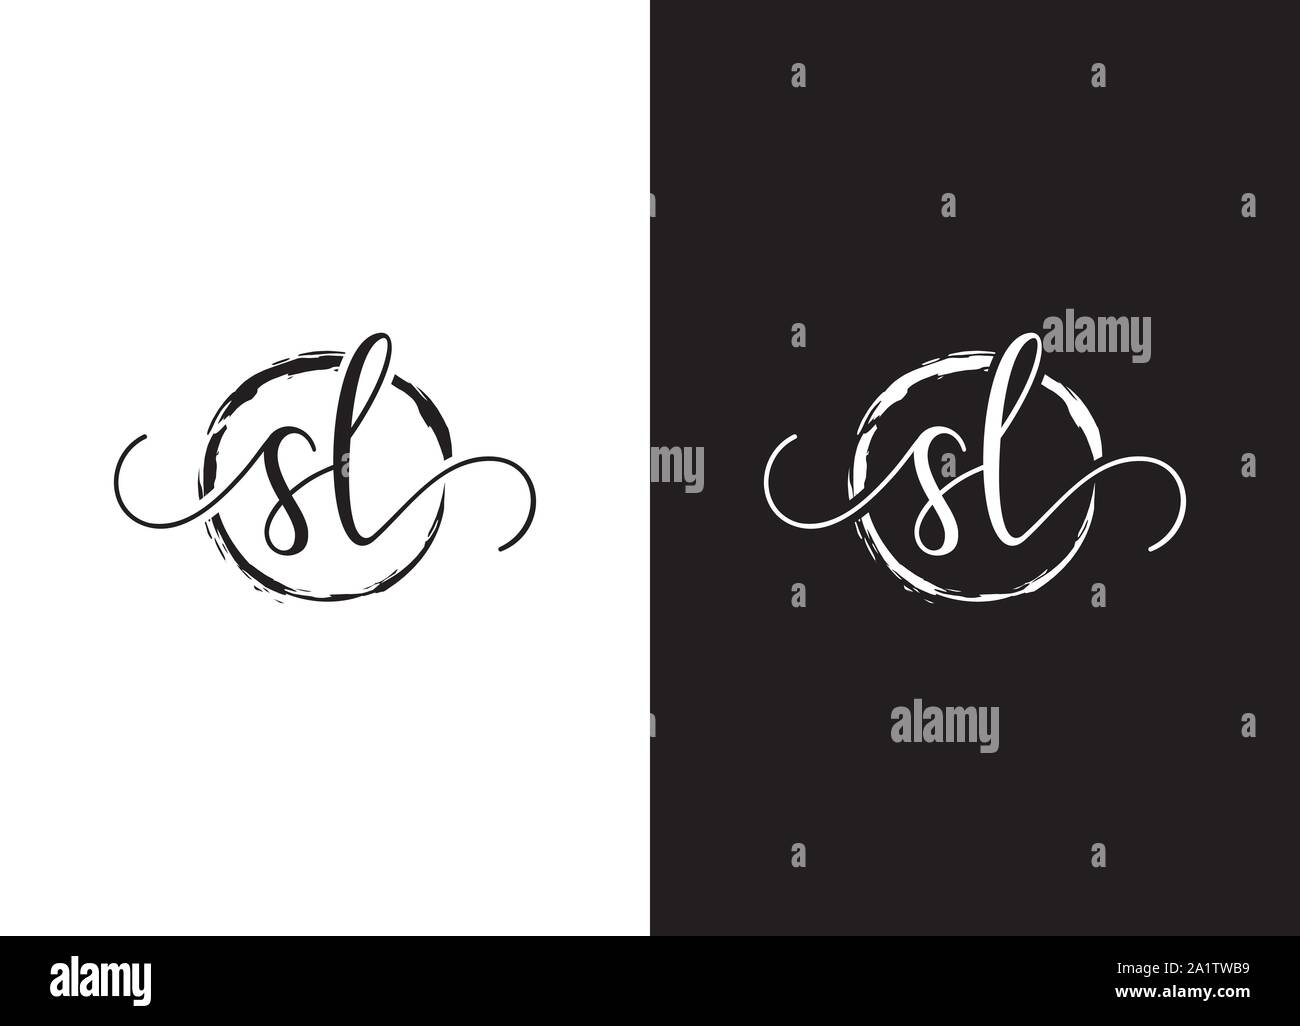 SL erste Handschrift logo Vektor, SL erste Handschrift Logo Design mit einem Kreis. Zen Kreis Bürste, handschriftliche Logo für Mode, Team, Hochzeit Stock Vektor